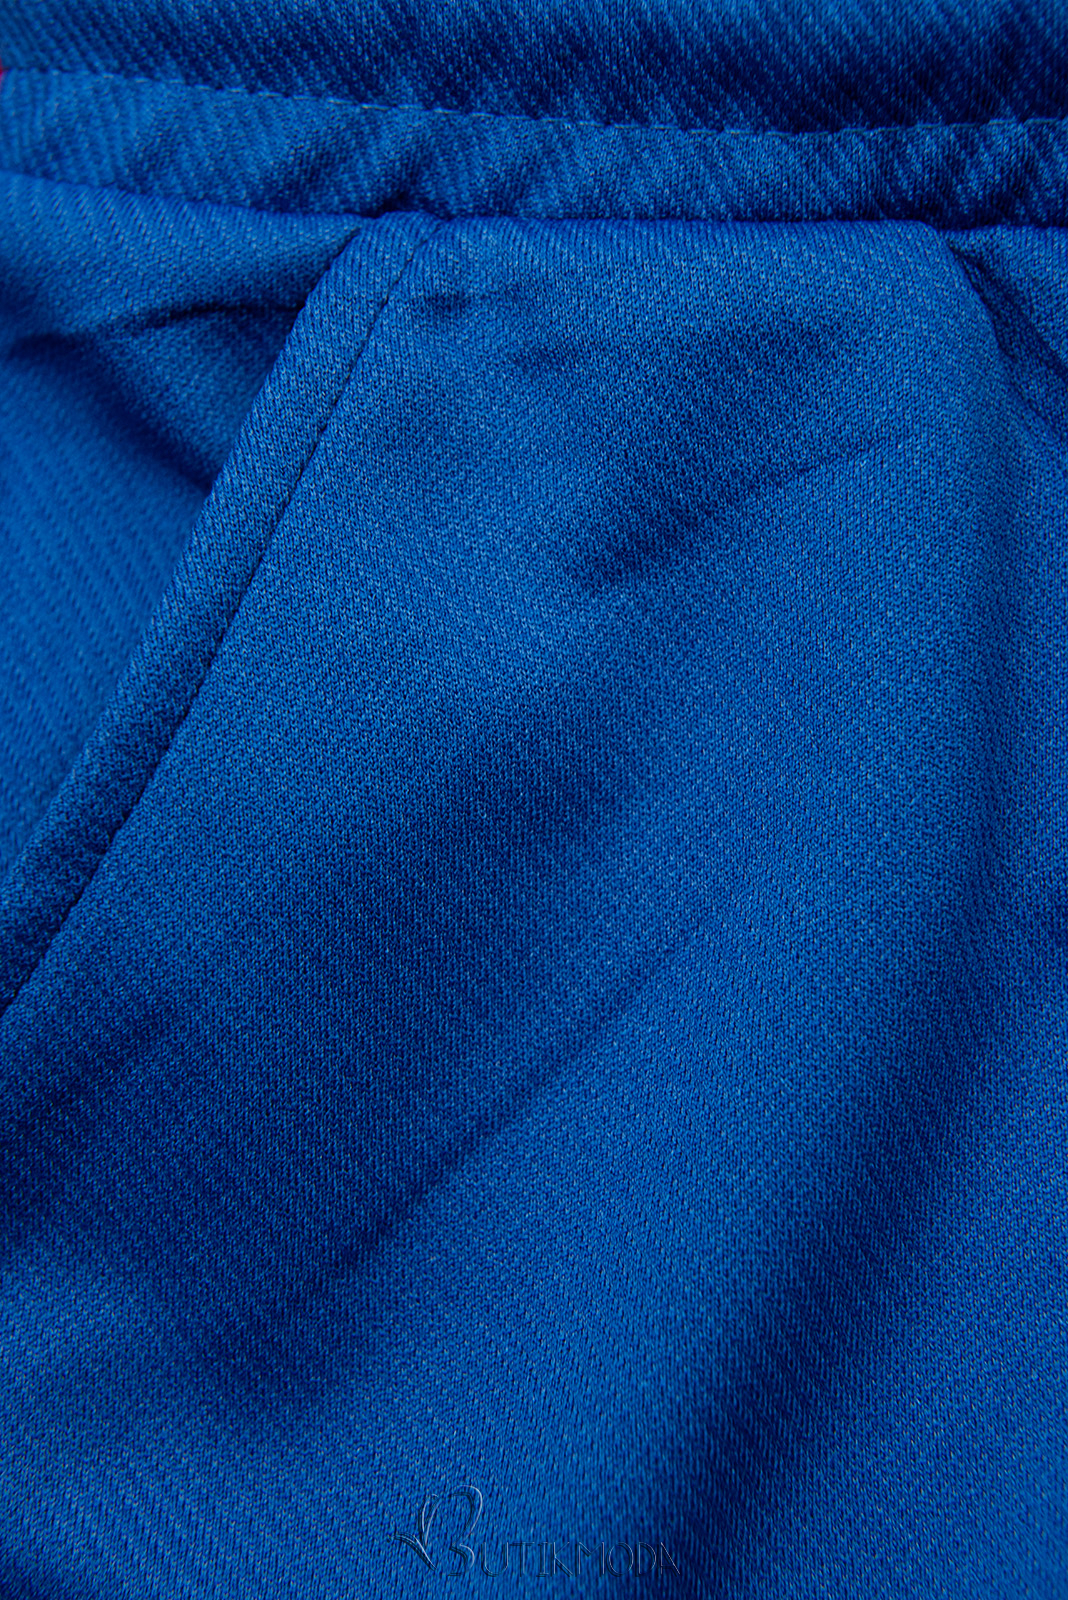 Pantaloni sport albastru cobalt cu buzunare